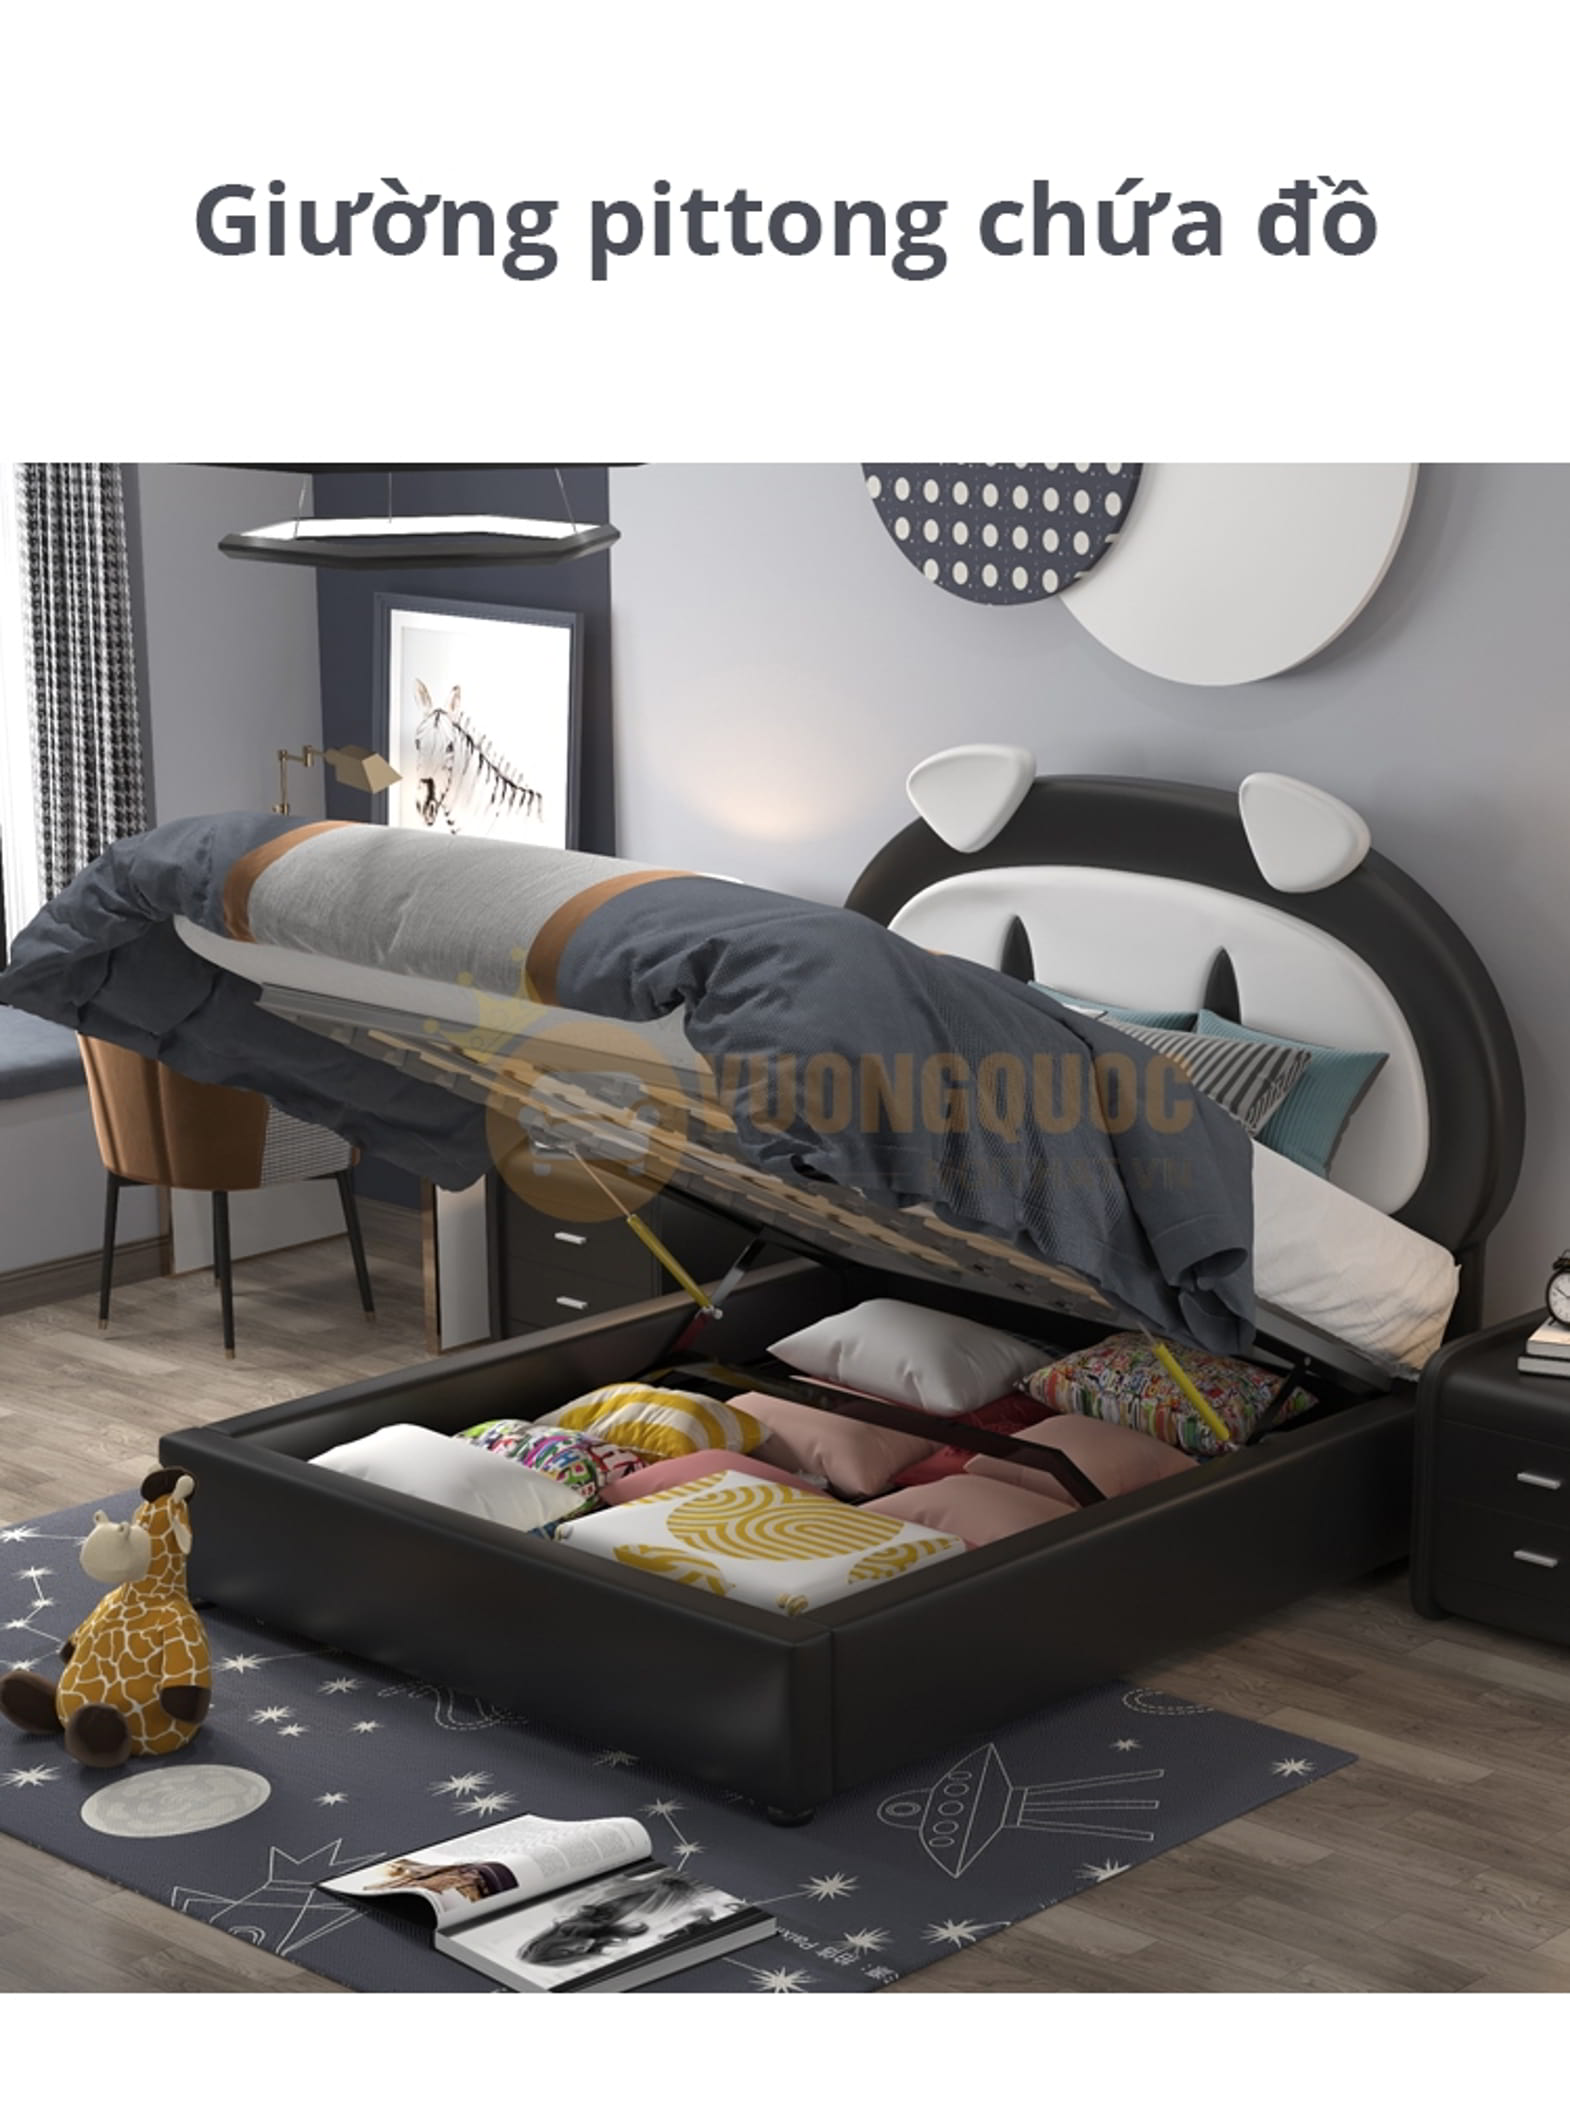 Giường ngủ cho bé thiết kế ngộ nghĩnh FDCB89 giường pittong